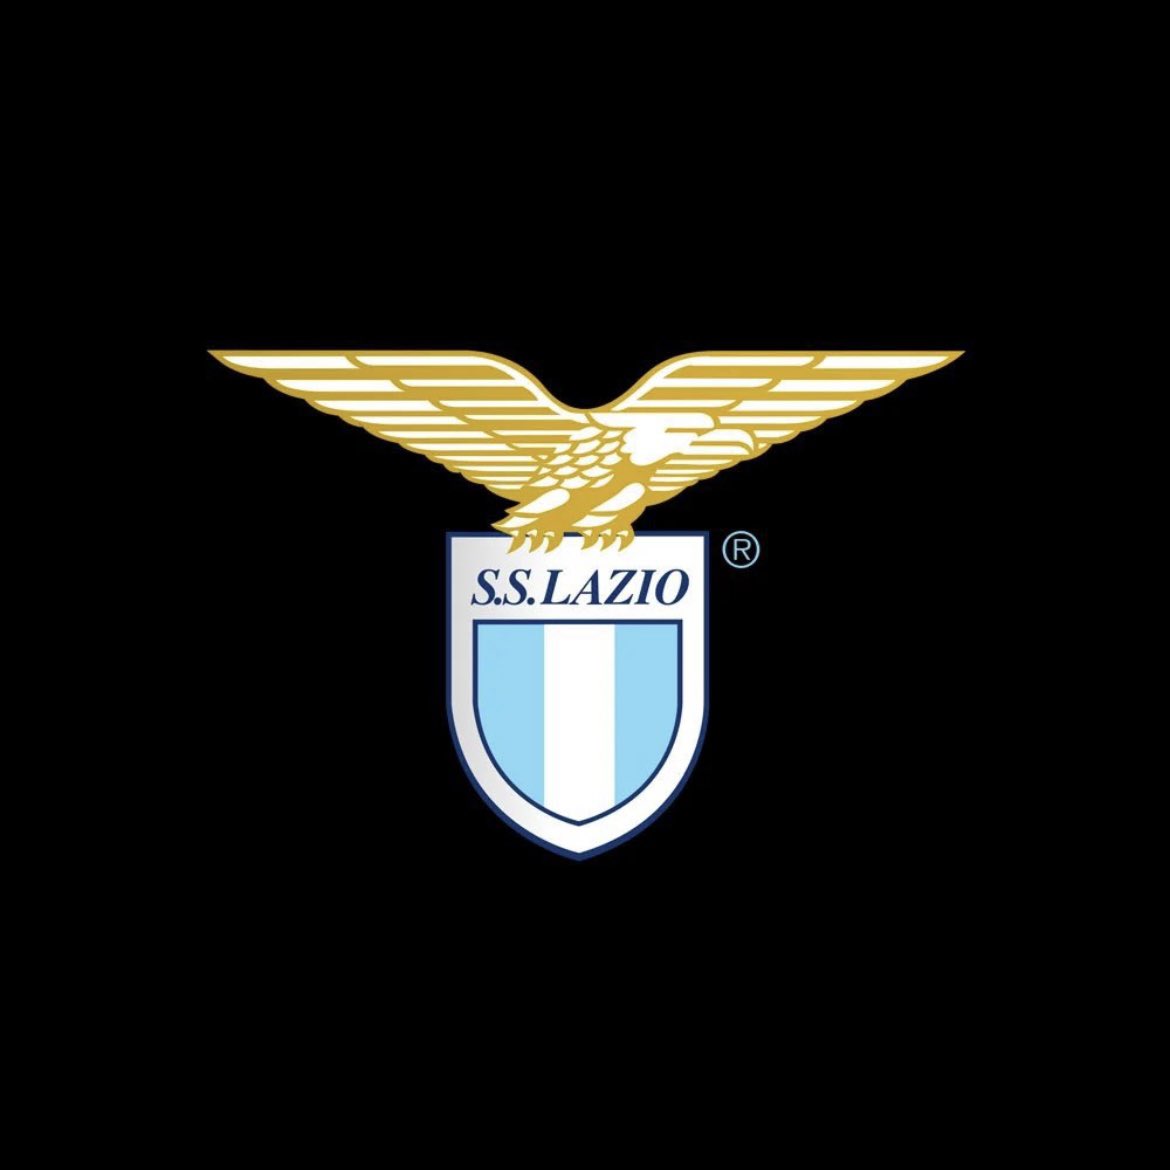 Il presidente Claudio Lotito, la dirigenza, la squadra e tutta la S.S. Lazio esprimono la propria vicinanza a Maurizio Sarri per la scomparsa dell’amata mamma Clementina e si stringono al cordoglio dei familiari 🙏